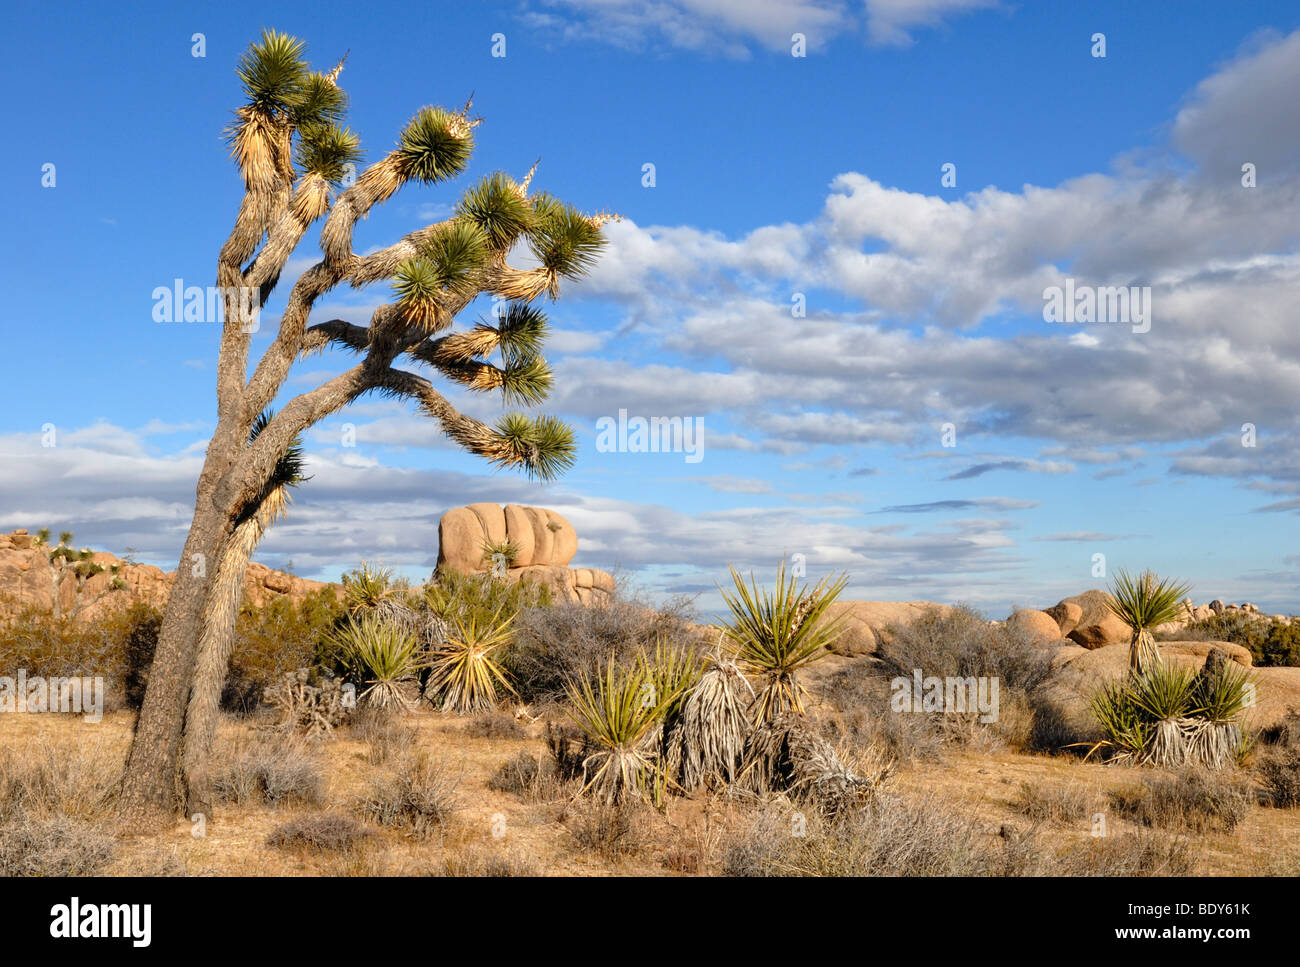 Joshua Tree (Yucca brevifolia) delante de monzogranito formaciones, el Parque Nacional Joshua Tree, Palm Desert, California meridional Foto de stock